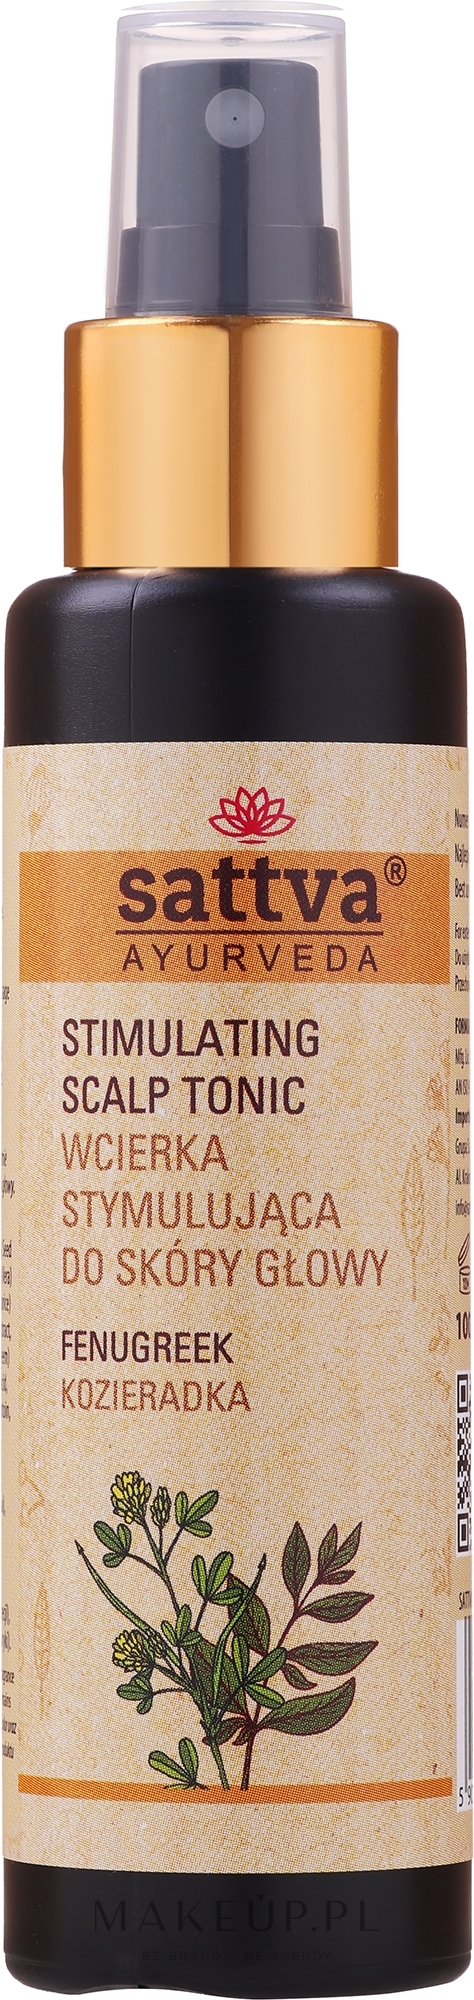 Wcierka stymulująca do skóry głowy Kozieradka - Sattva Ayurveda — Zdjęcie 100 ml